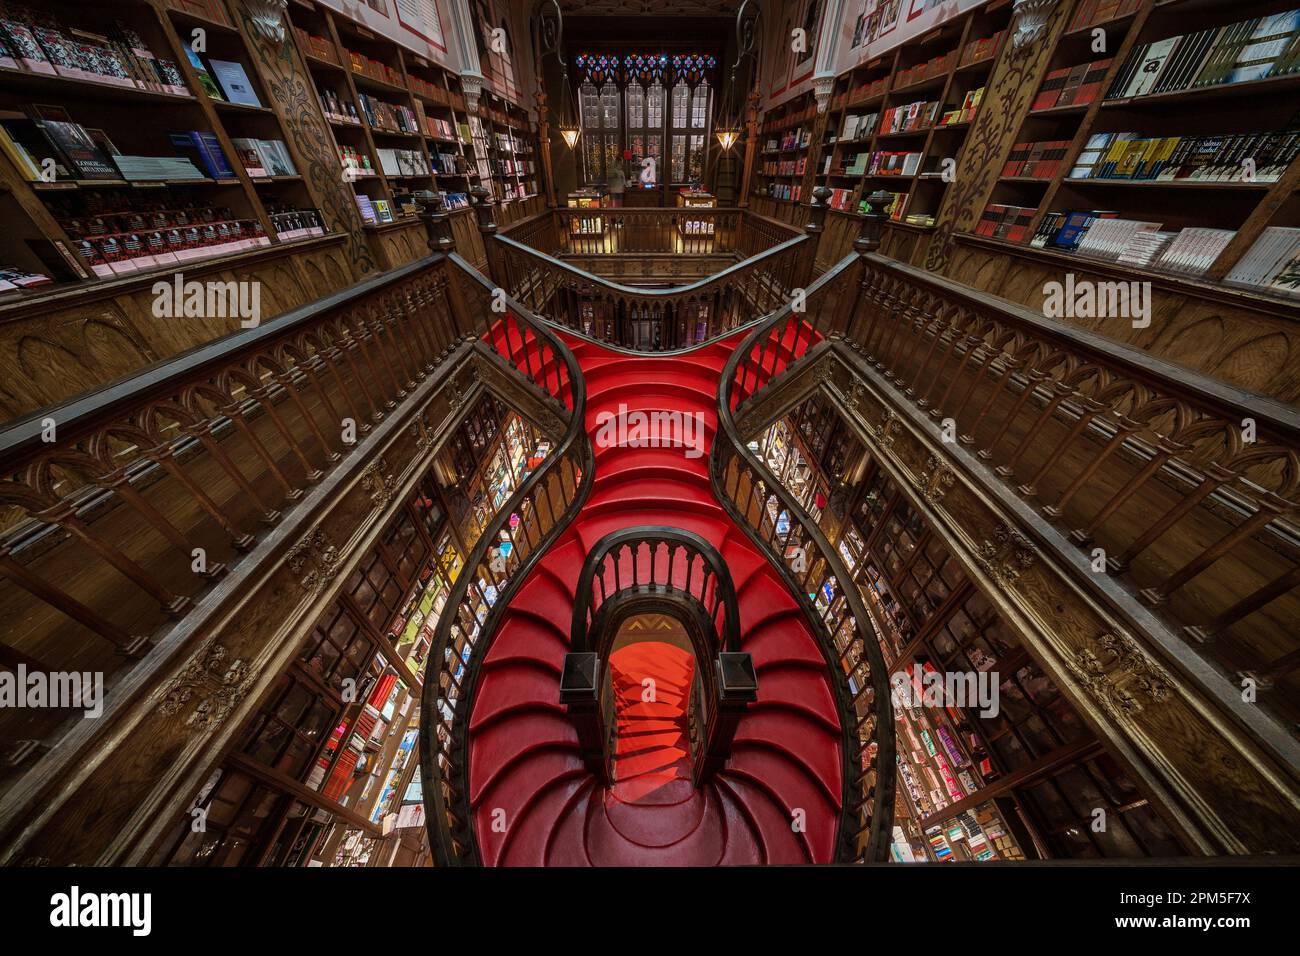 Interior of Lello Bookstore (Portuguese: Livraria Lello) in the Historic Centre of Porto (Oporto), Portugal. Stock Photo